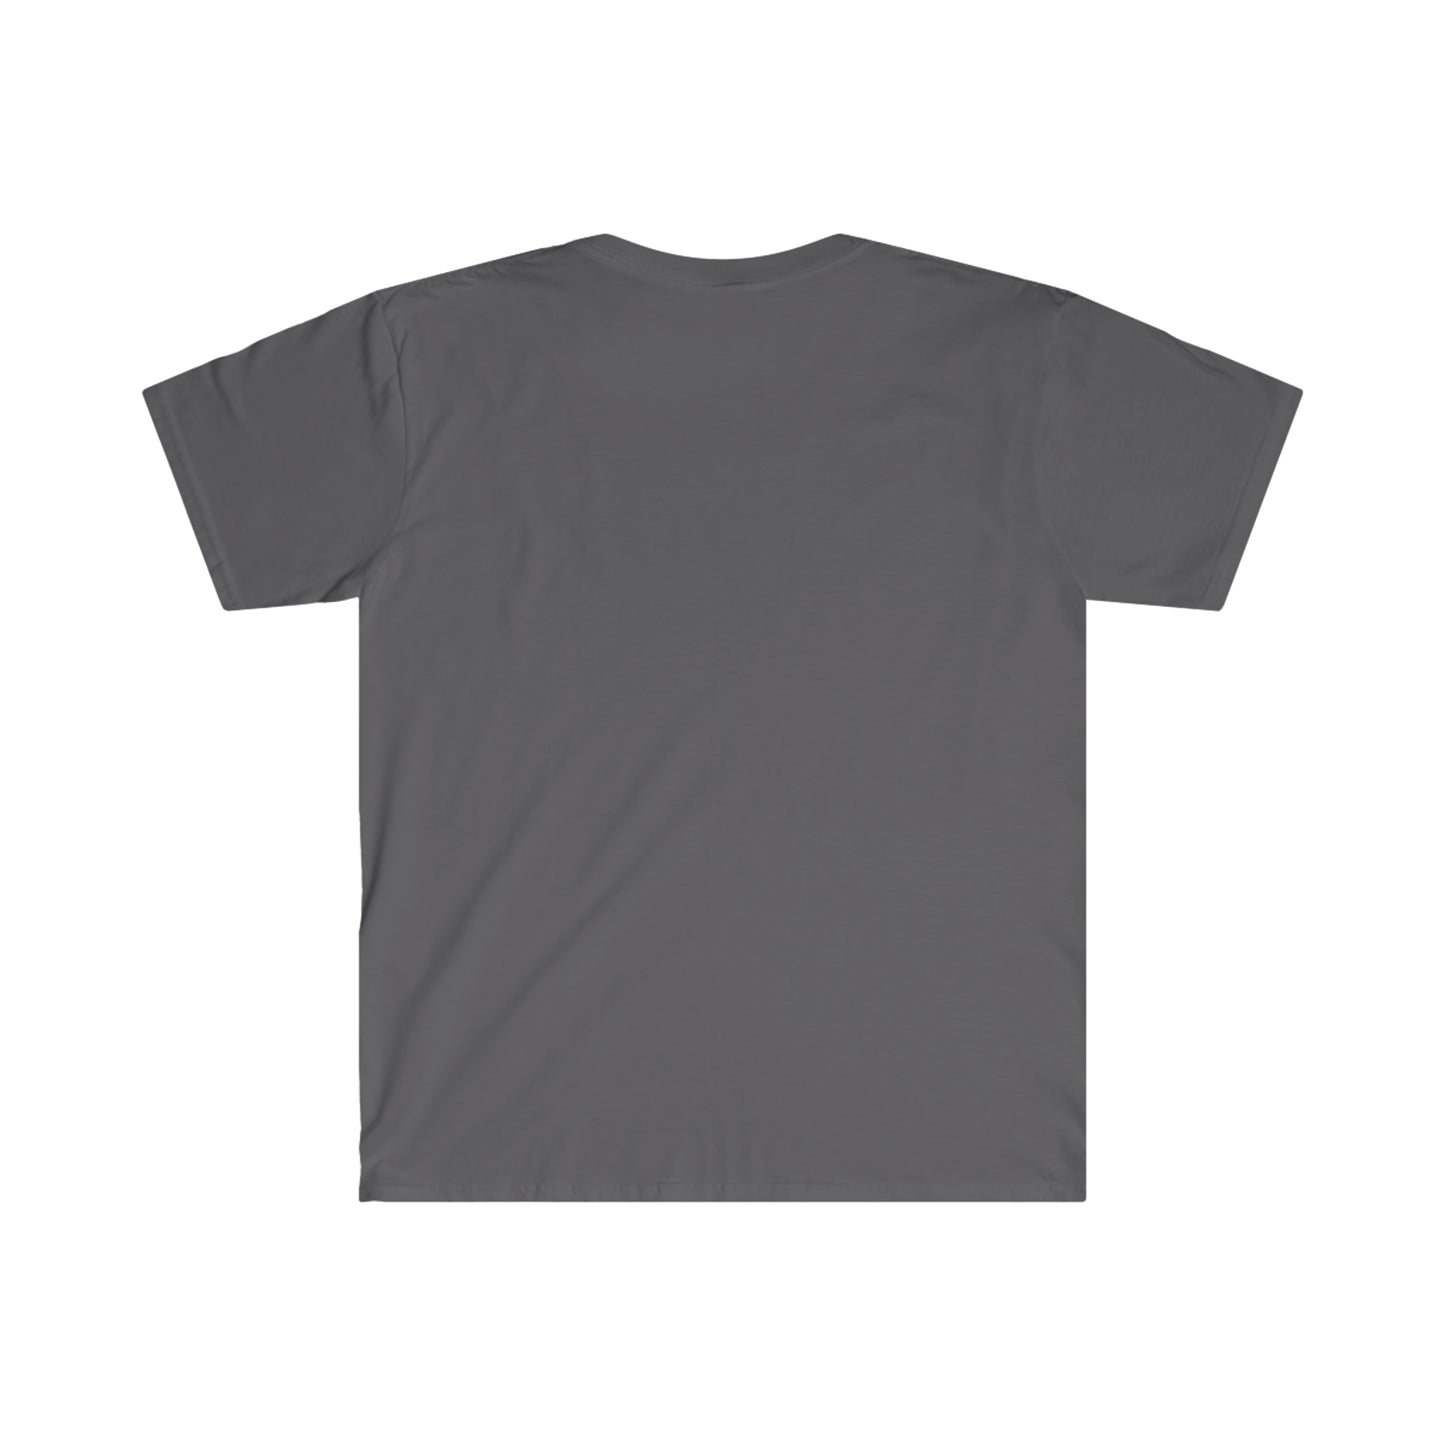 AntiquiTone Logo Charcoal Unisex Soft Style T-Shirt